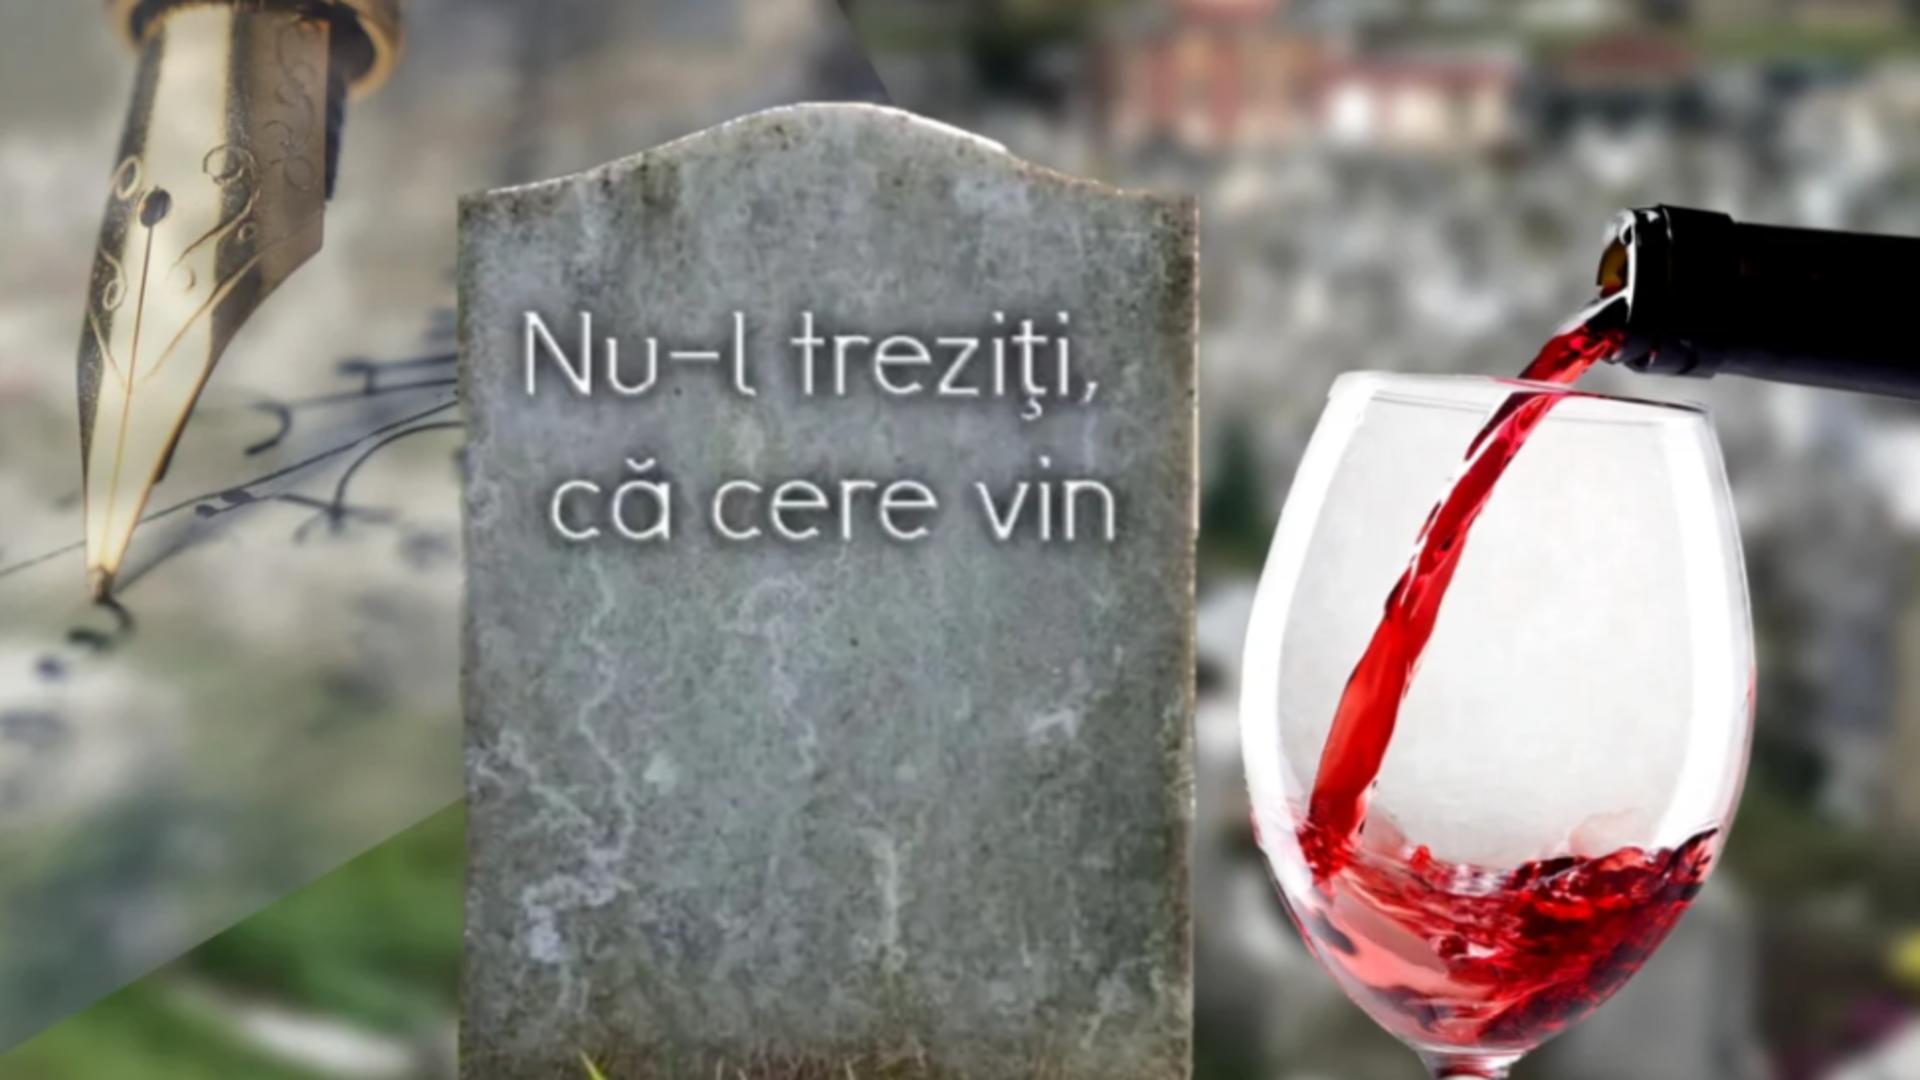 „Nu-l treziți că cere vin”. Mormânt din România, devenit celebru datorită mesajului transmis. Cărui scriitor îi aparține